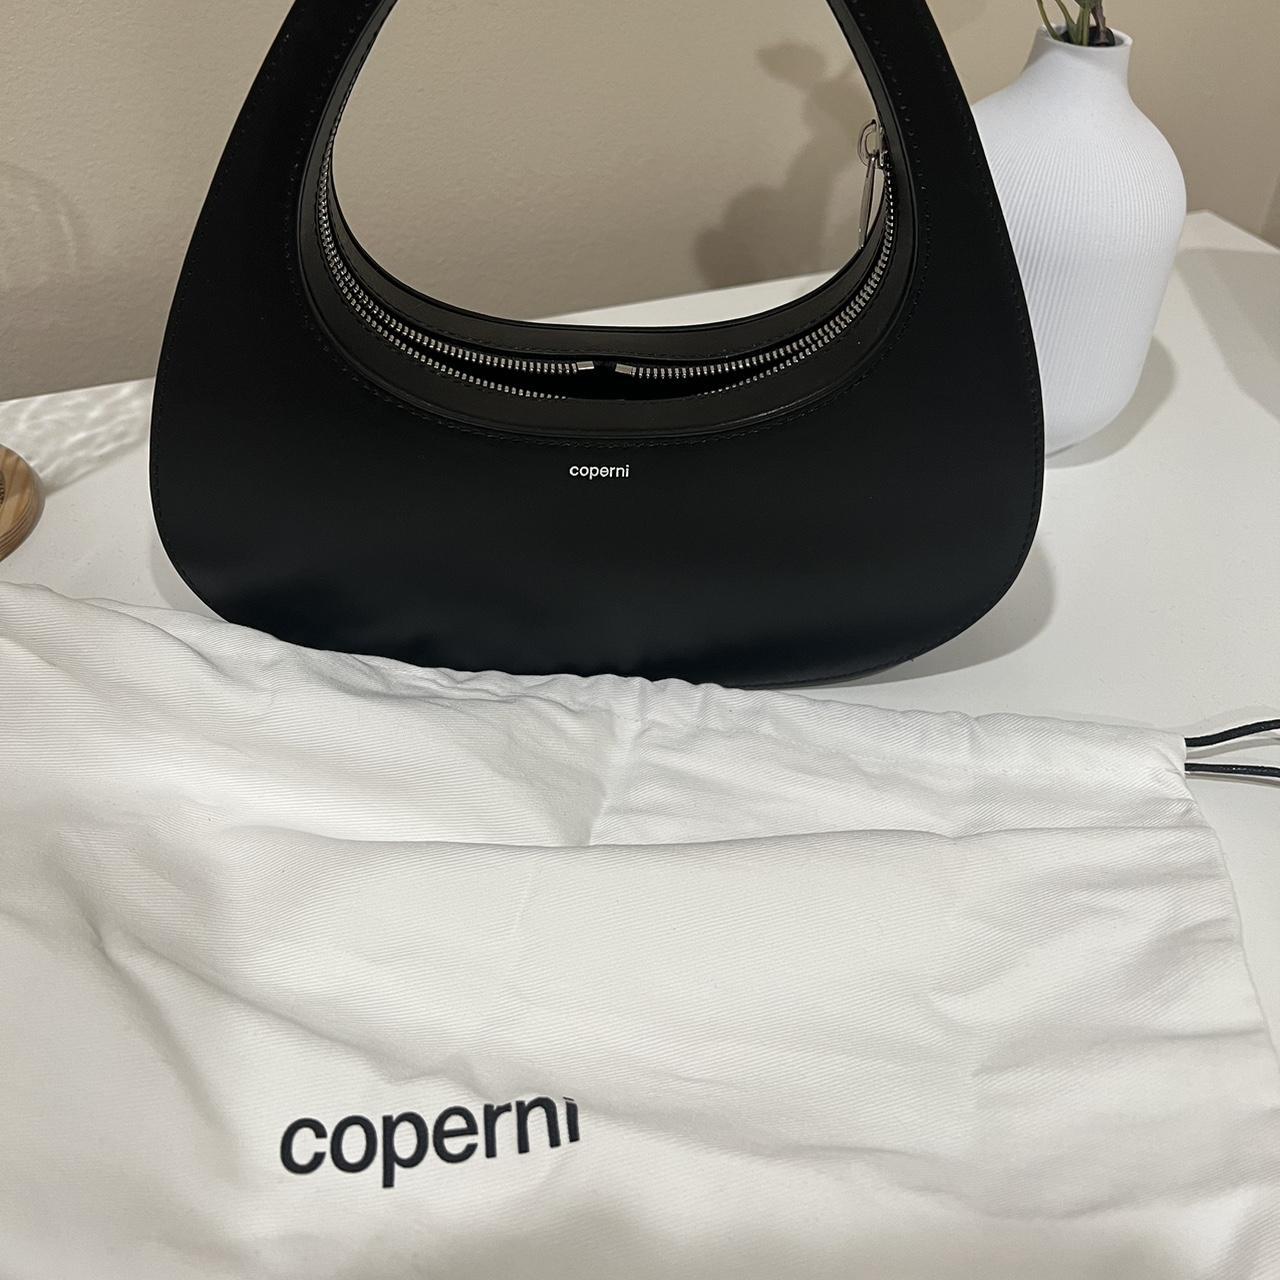 Coperni Women's Black Bag (2)